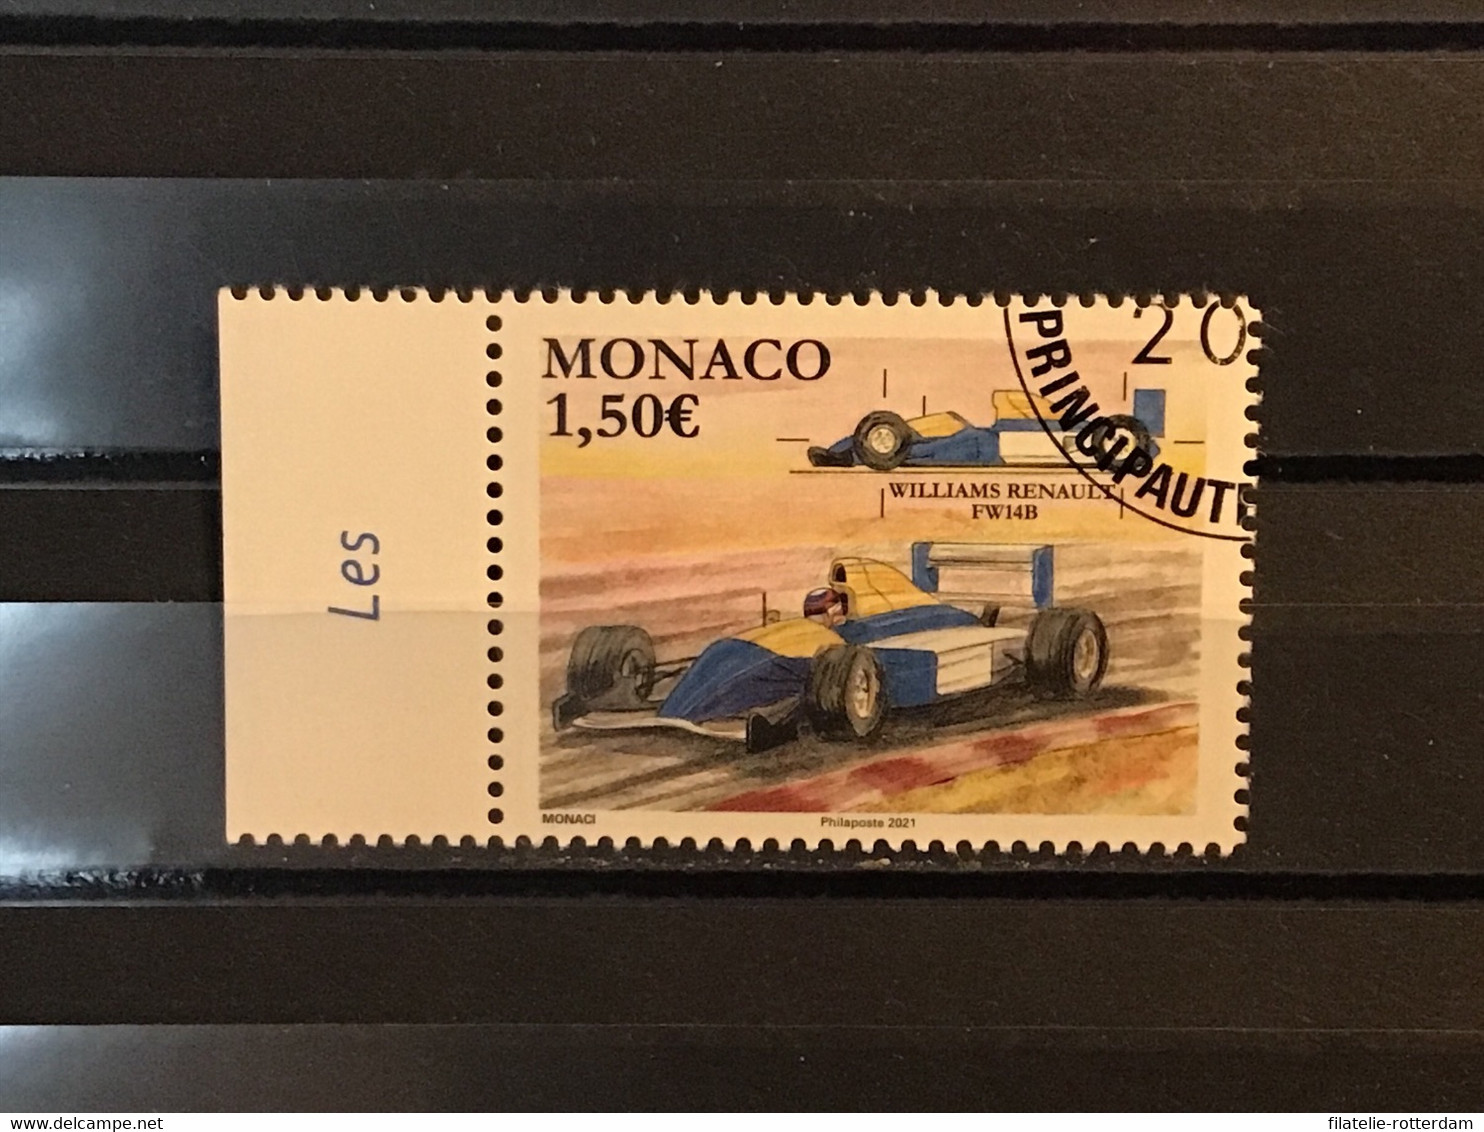 Monaco - Formule 1, Grand Prix Monaco (1.50) 2021 - Used Stamps